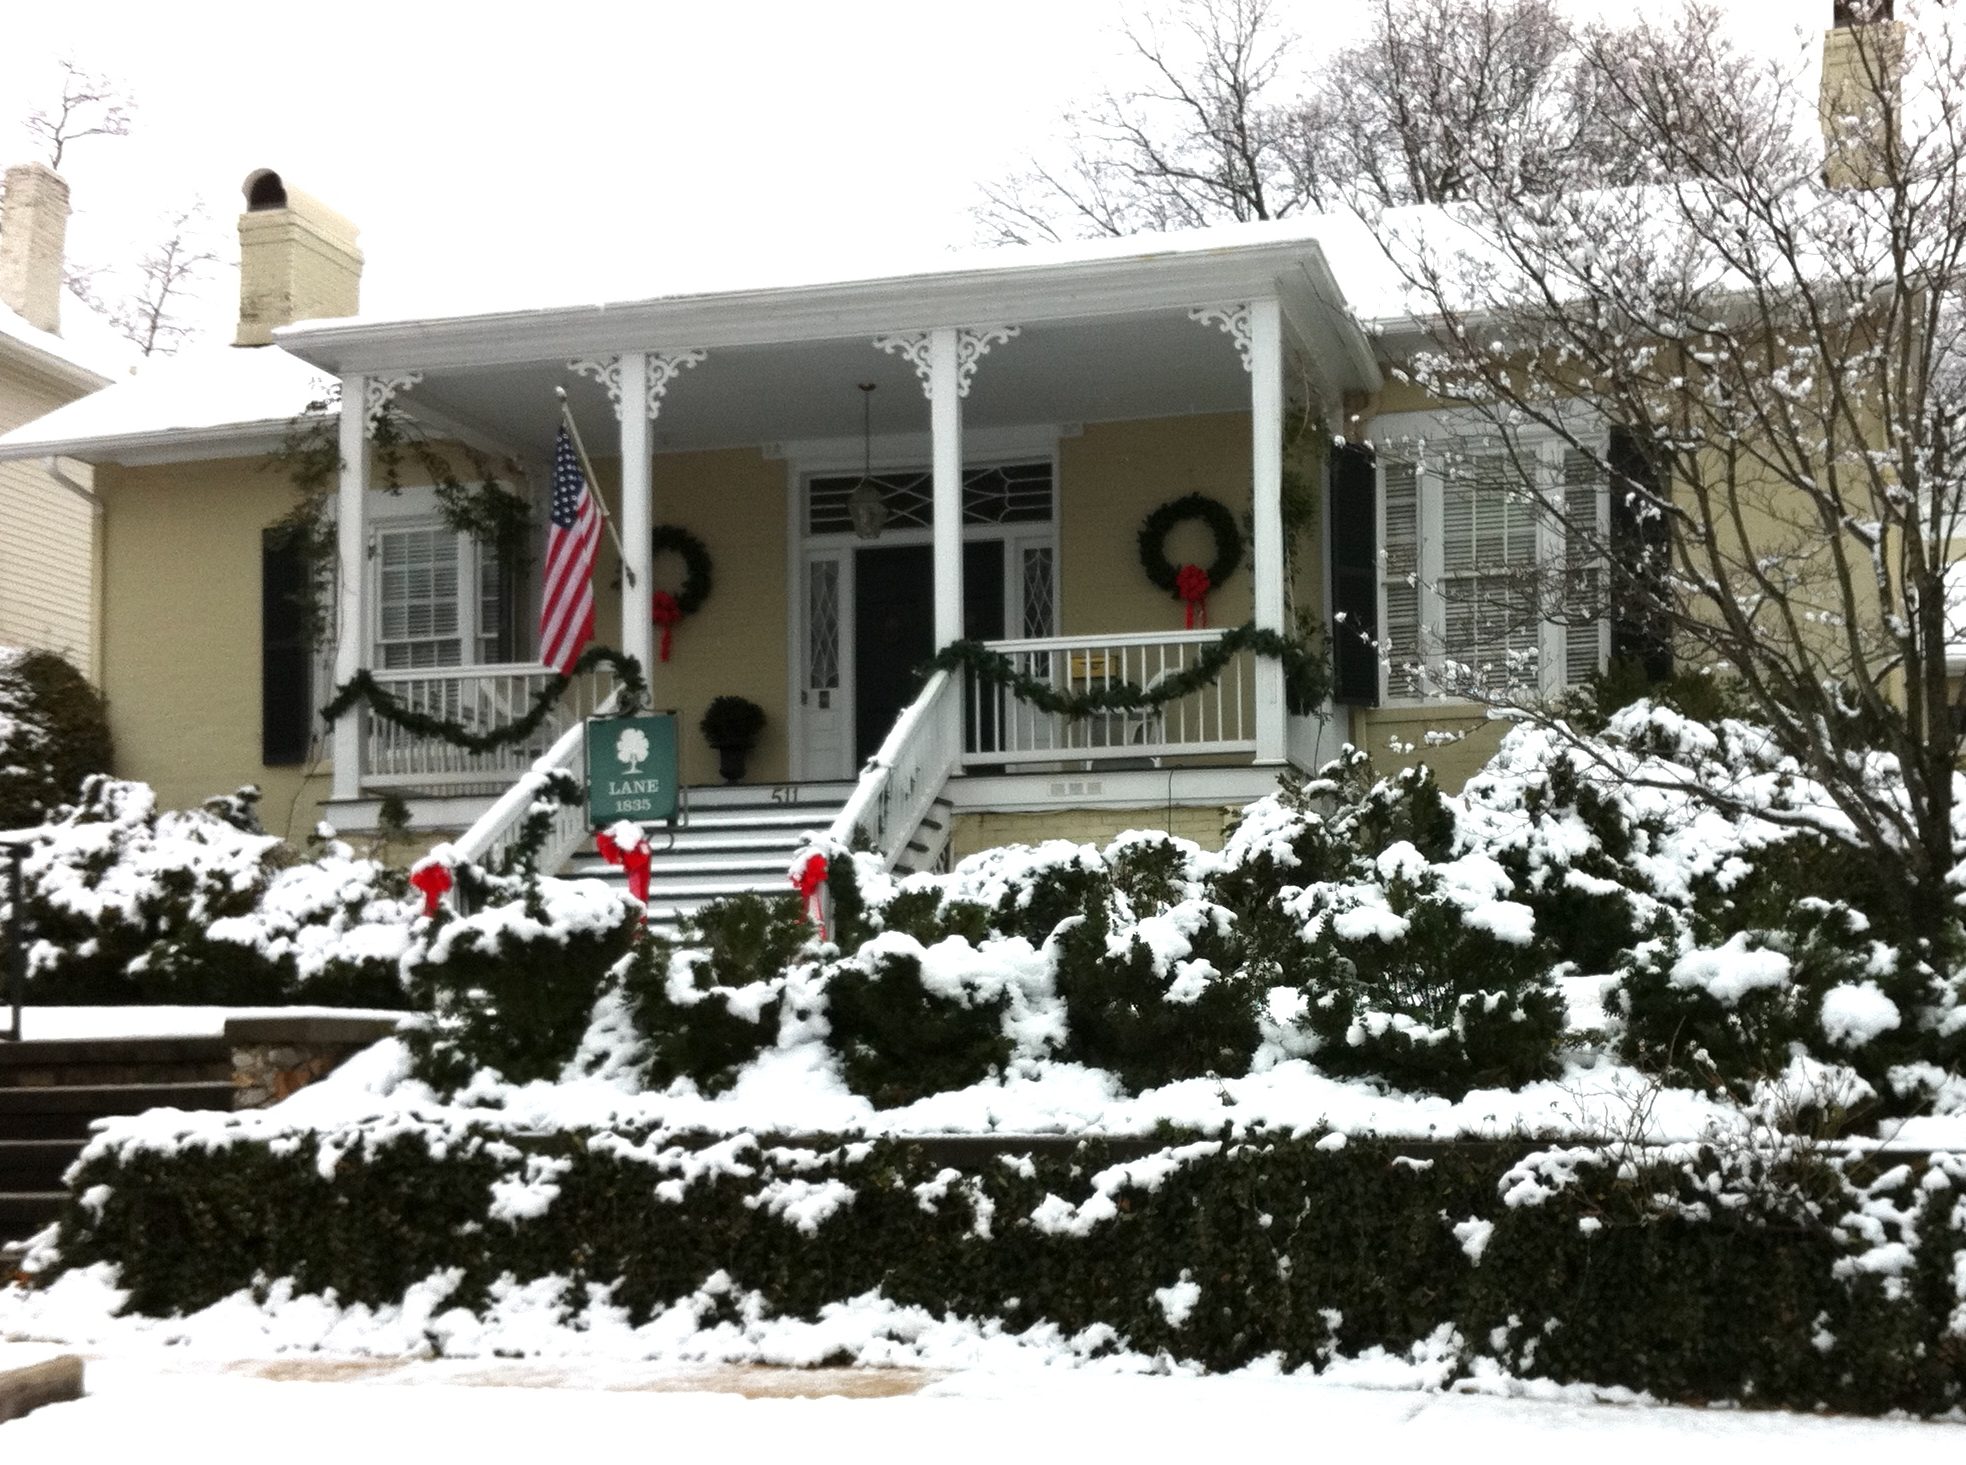 A snowy Christmas Day on Adams Street in downtown Huntsville, AL.